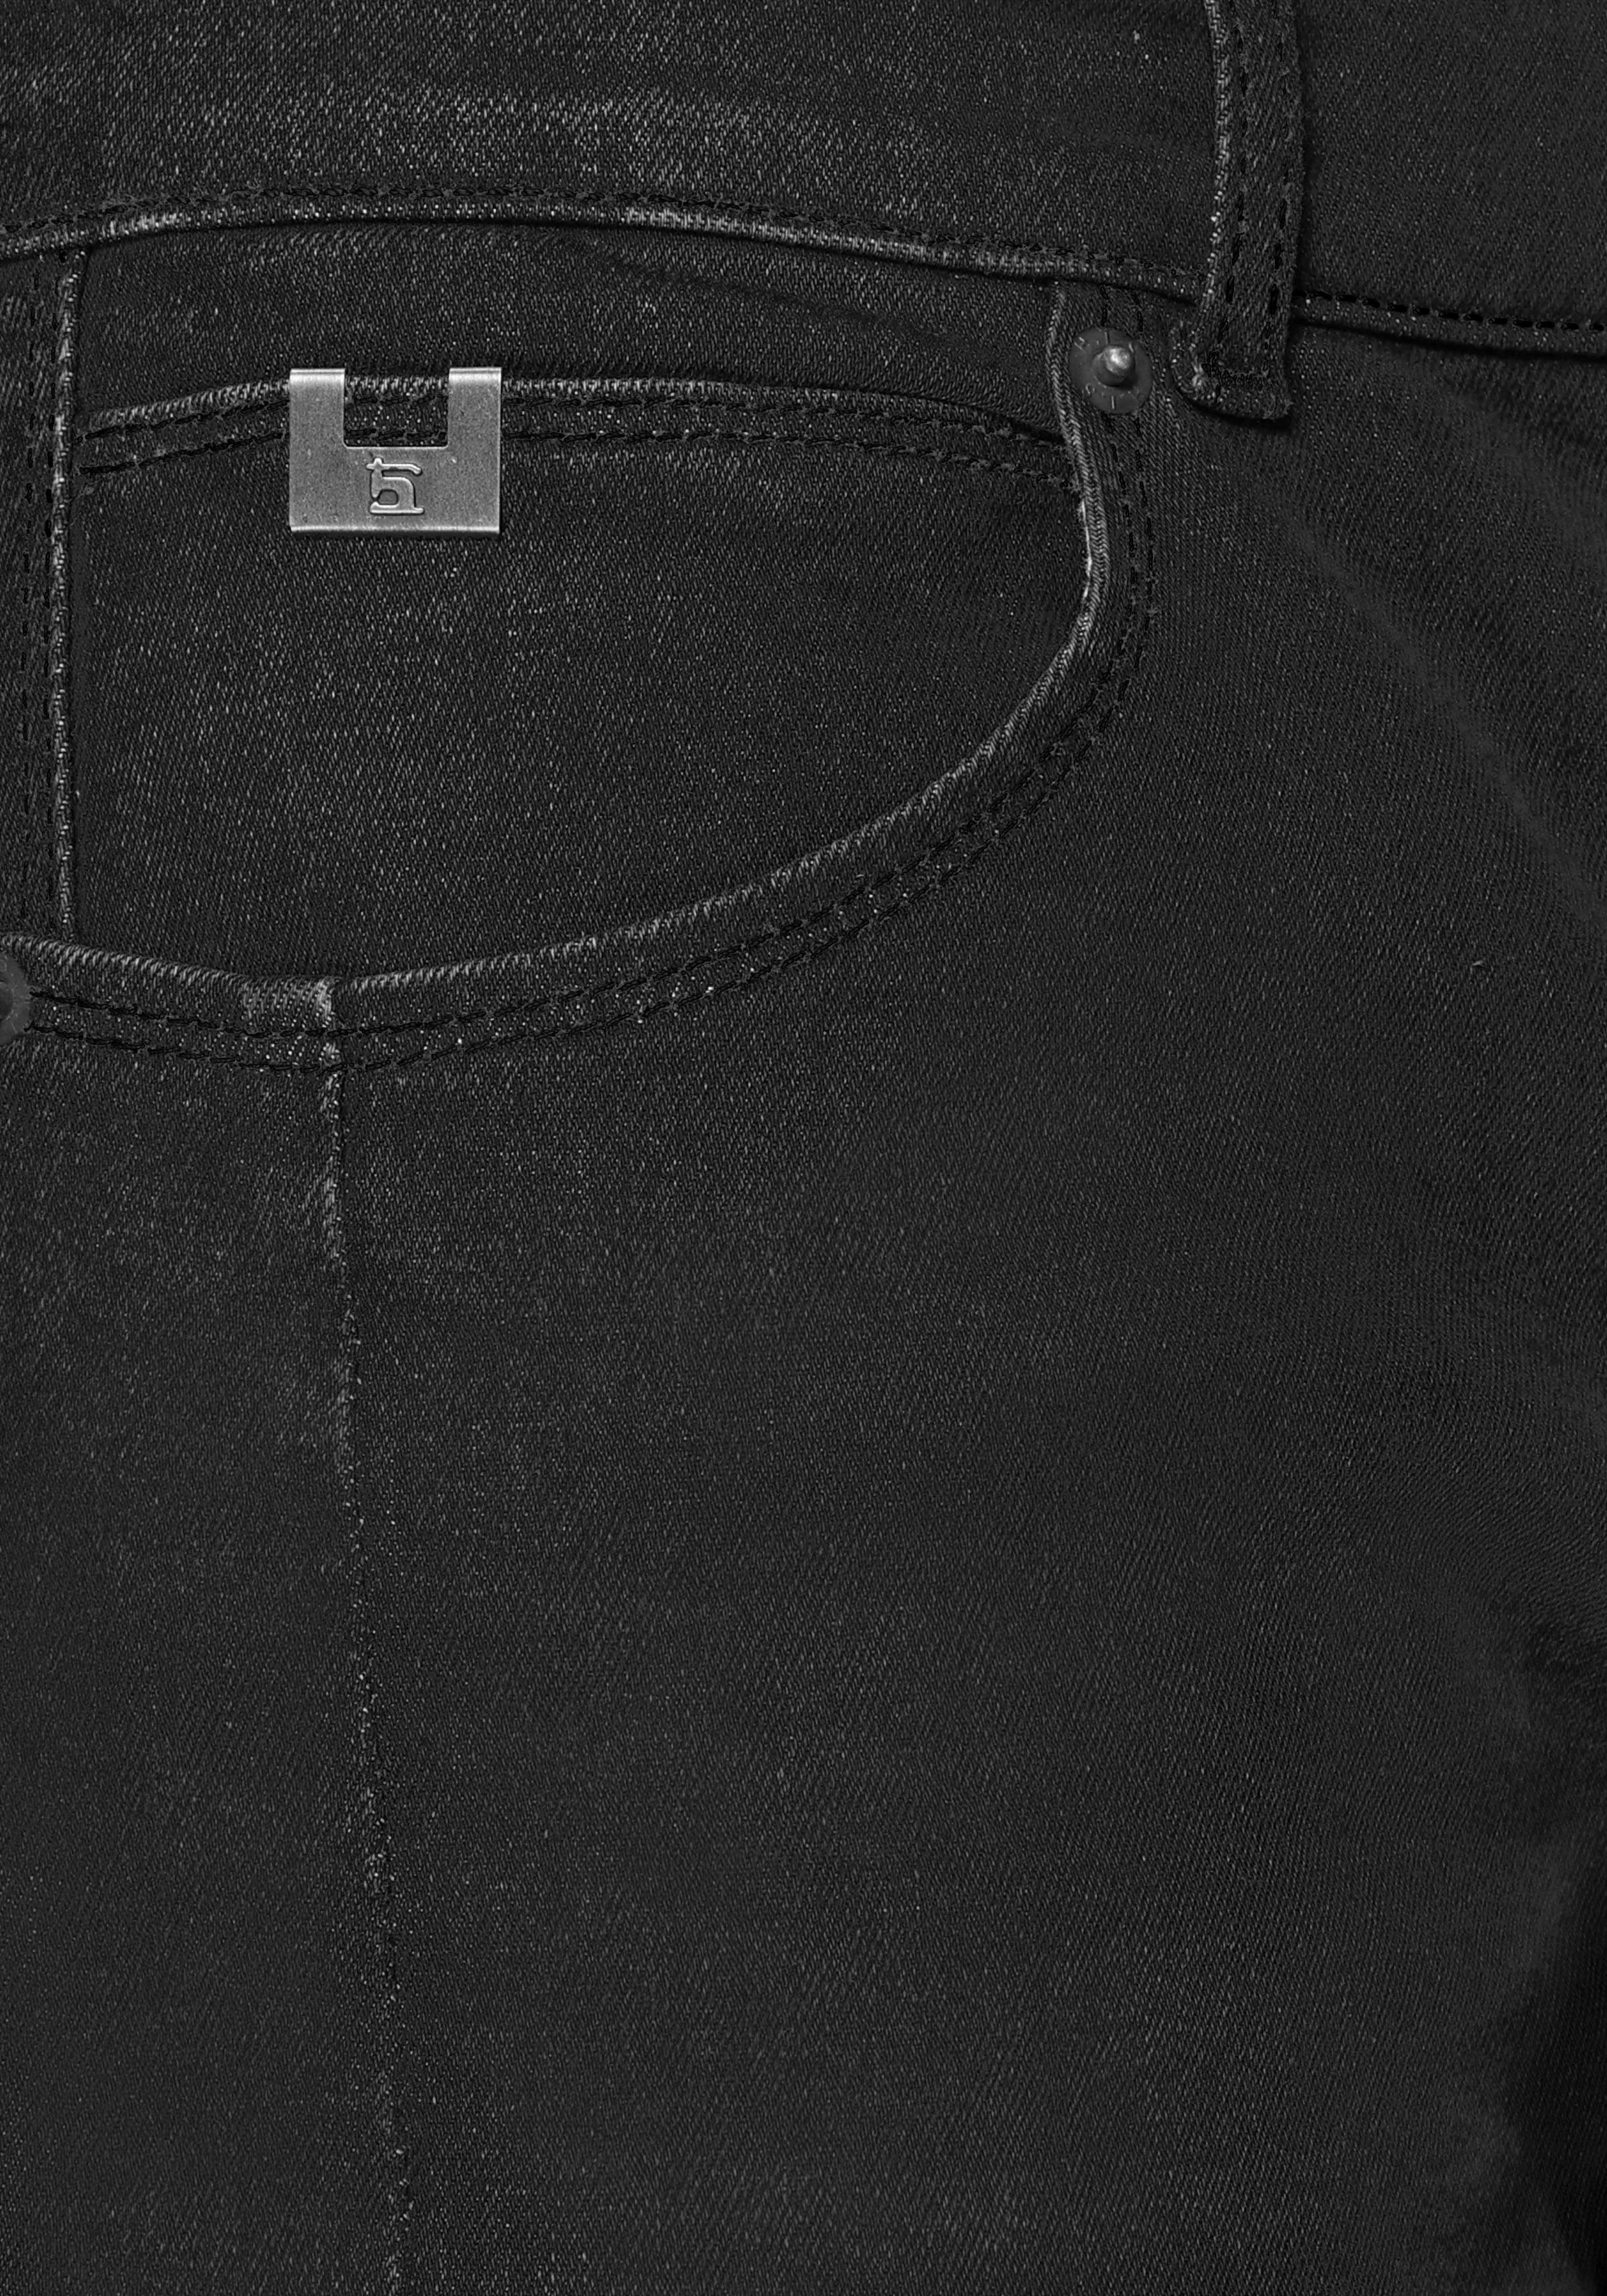 Ozon Ökologische, Produktion durch Wash H.I.S DALE wassersparende Straight-Jeans black-used